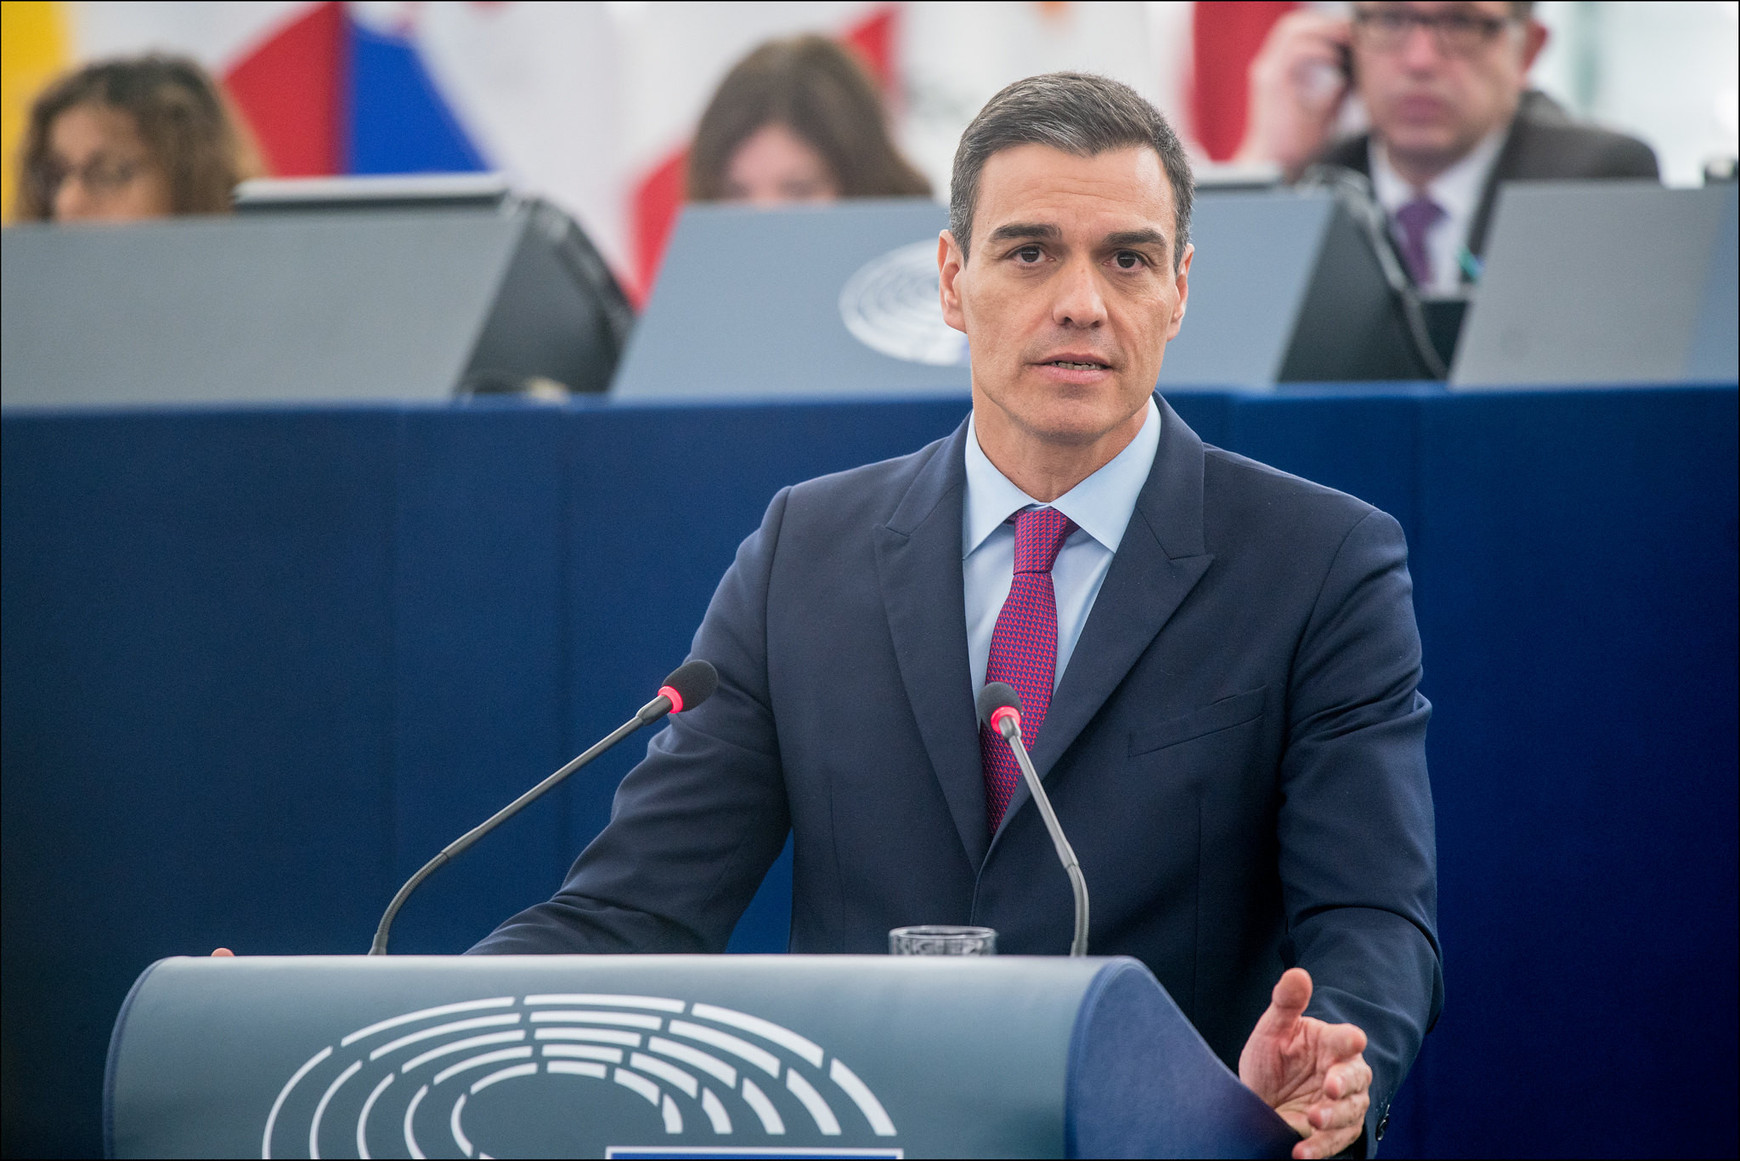 CC-BY-4.0: © European Union 2019 – Source: EP La montée du populisme en Espagne - Arthur Borriello